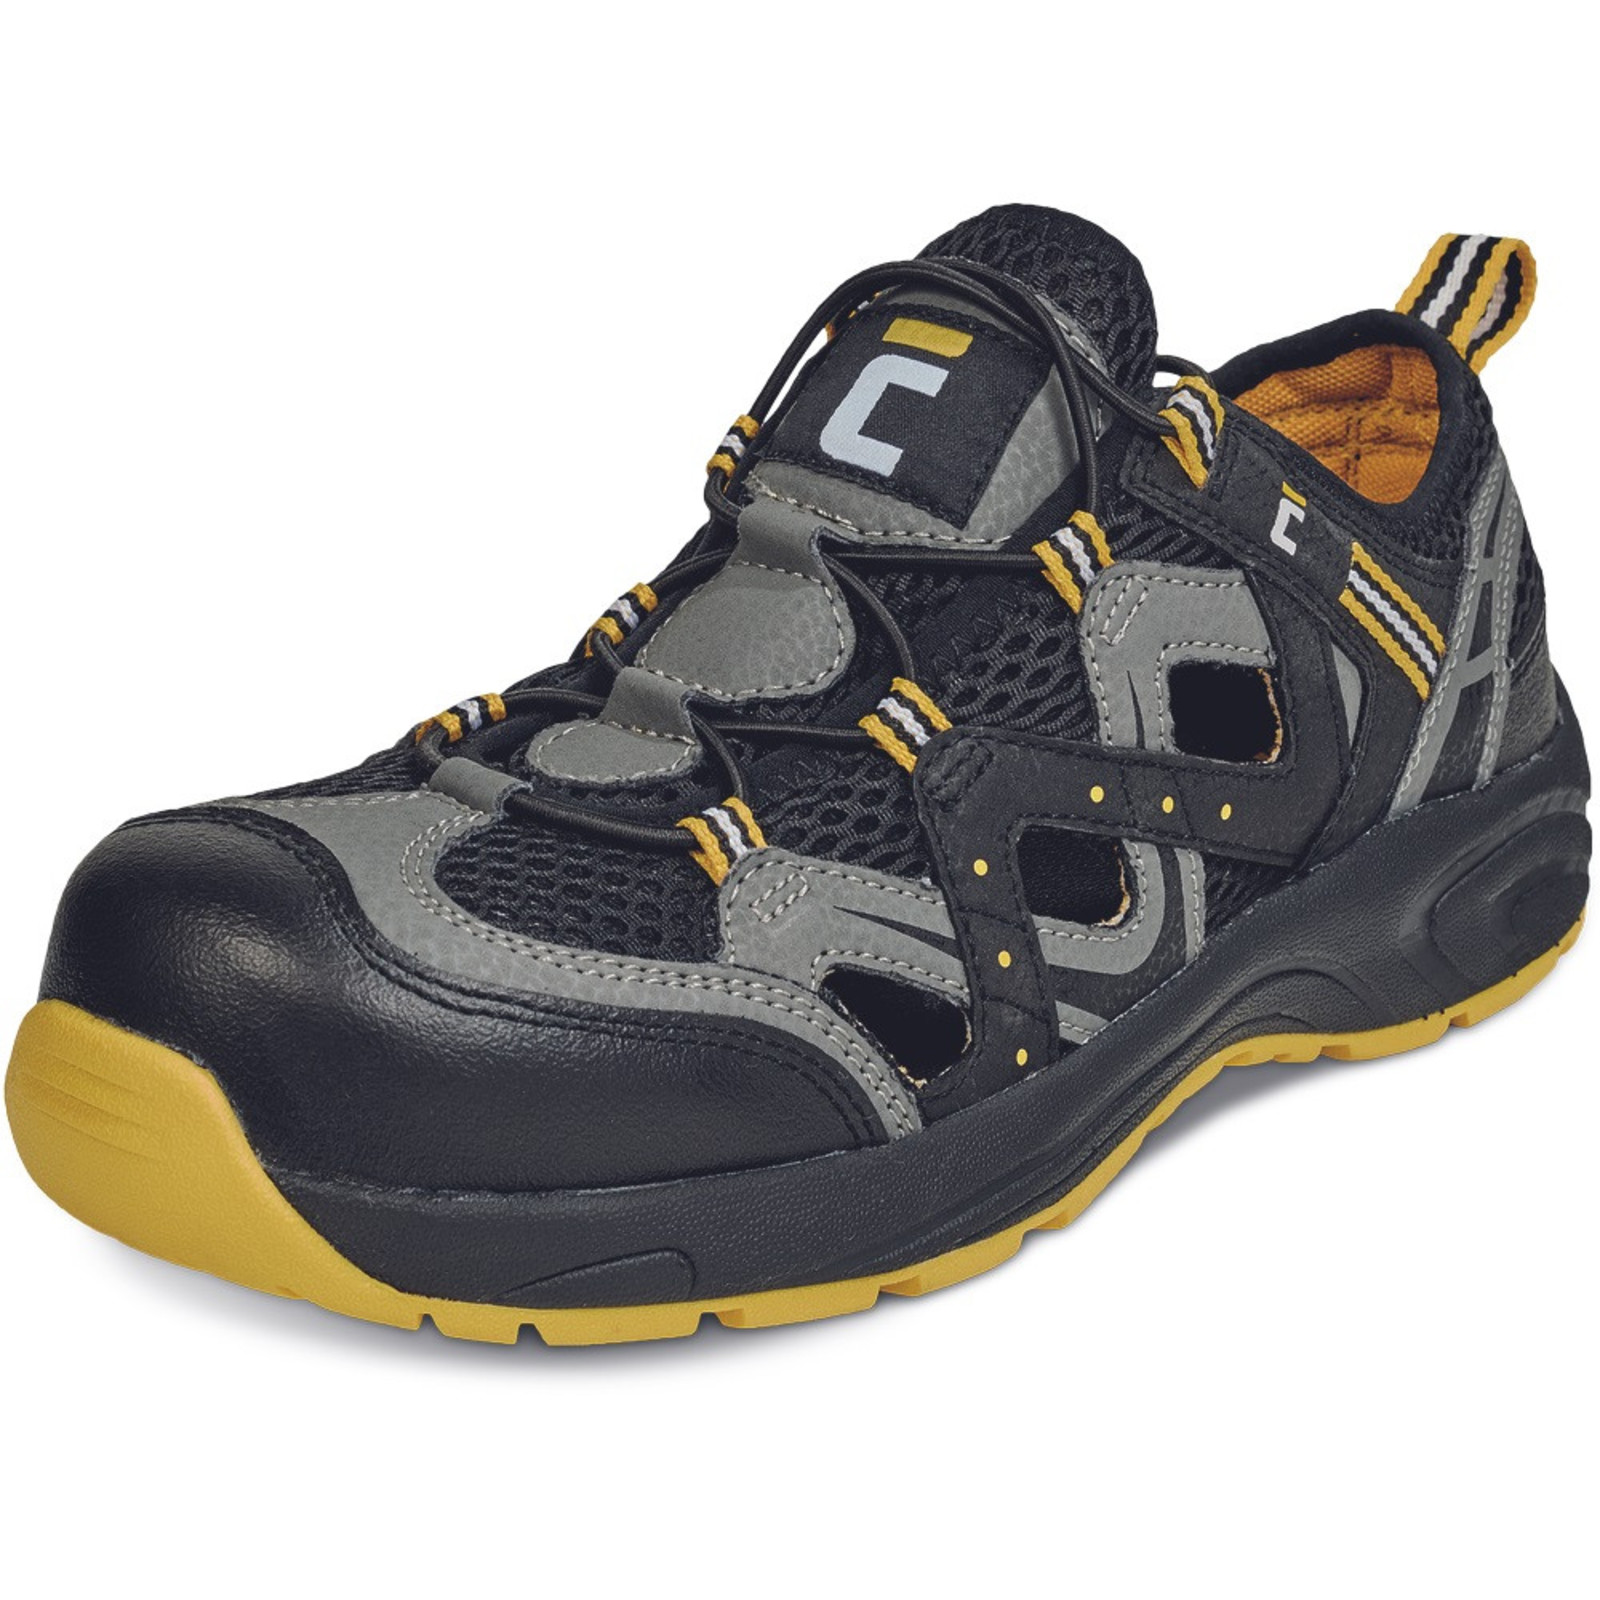 Bezpečnostné sandále Cerva Henford MF S1 SRC - veľkosť: 46, farba: čierna/žltá